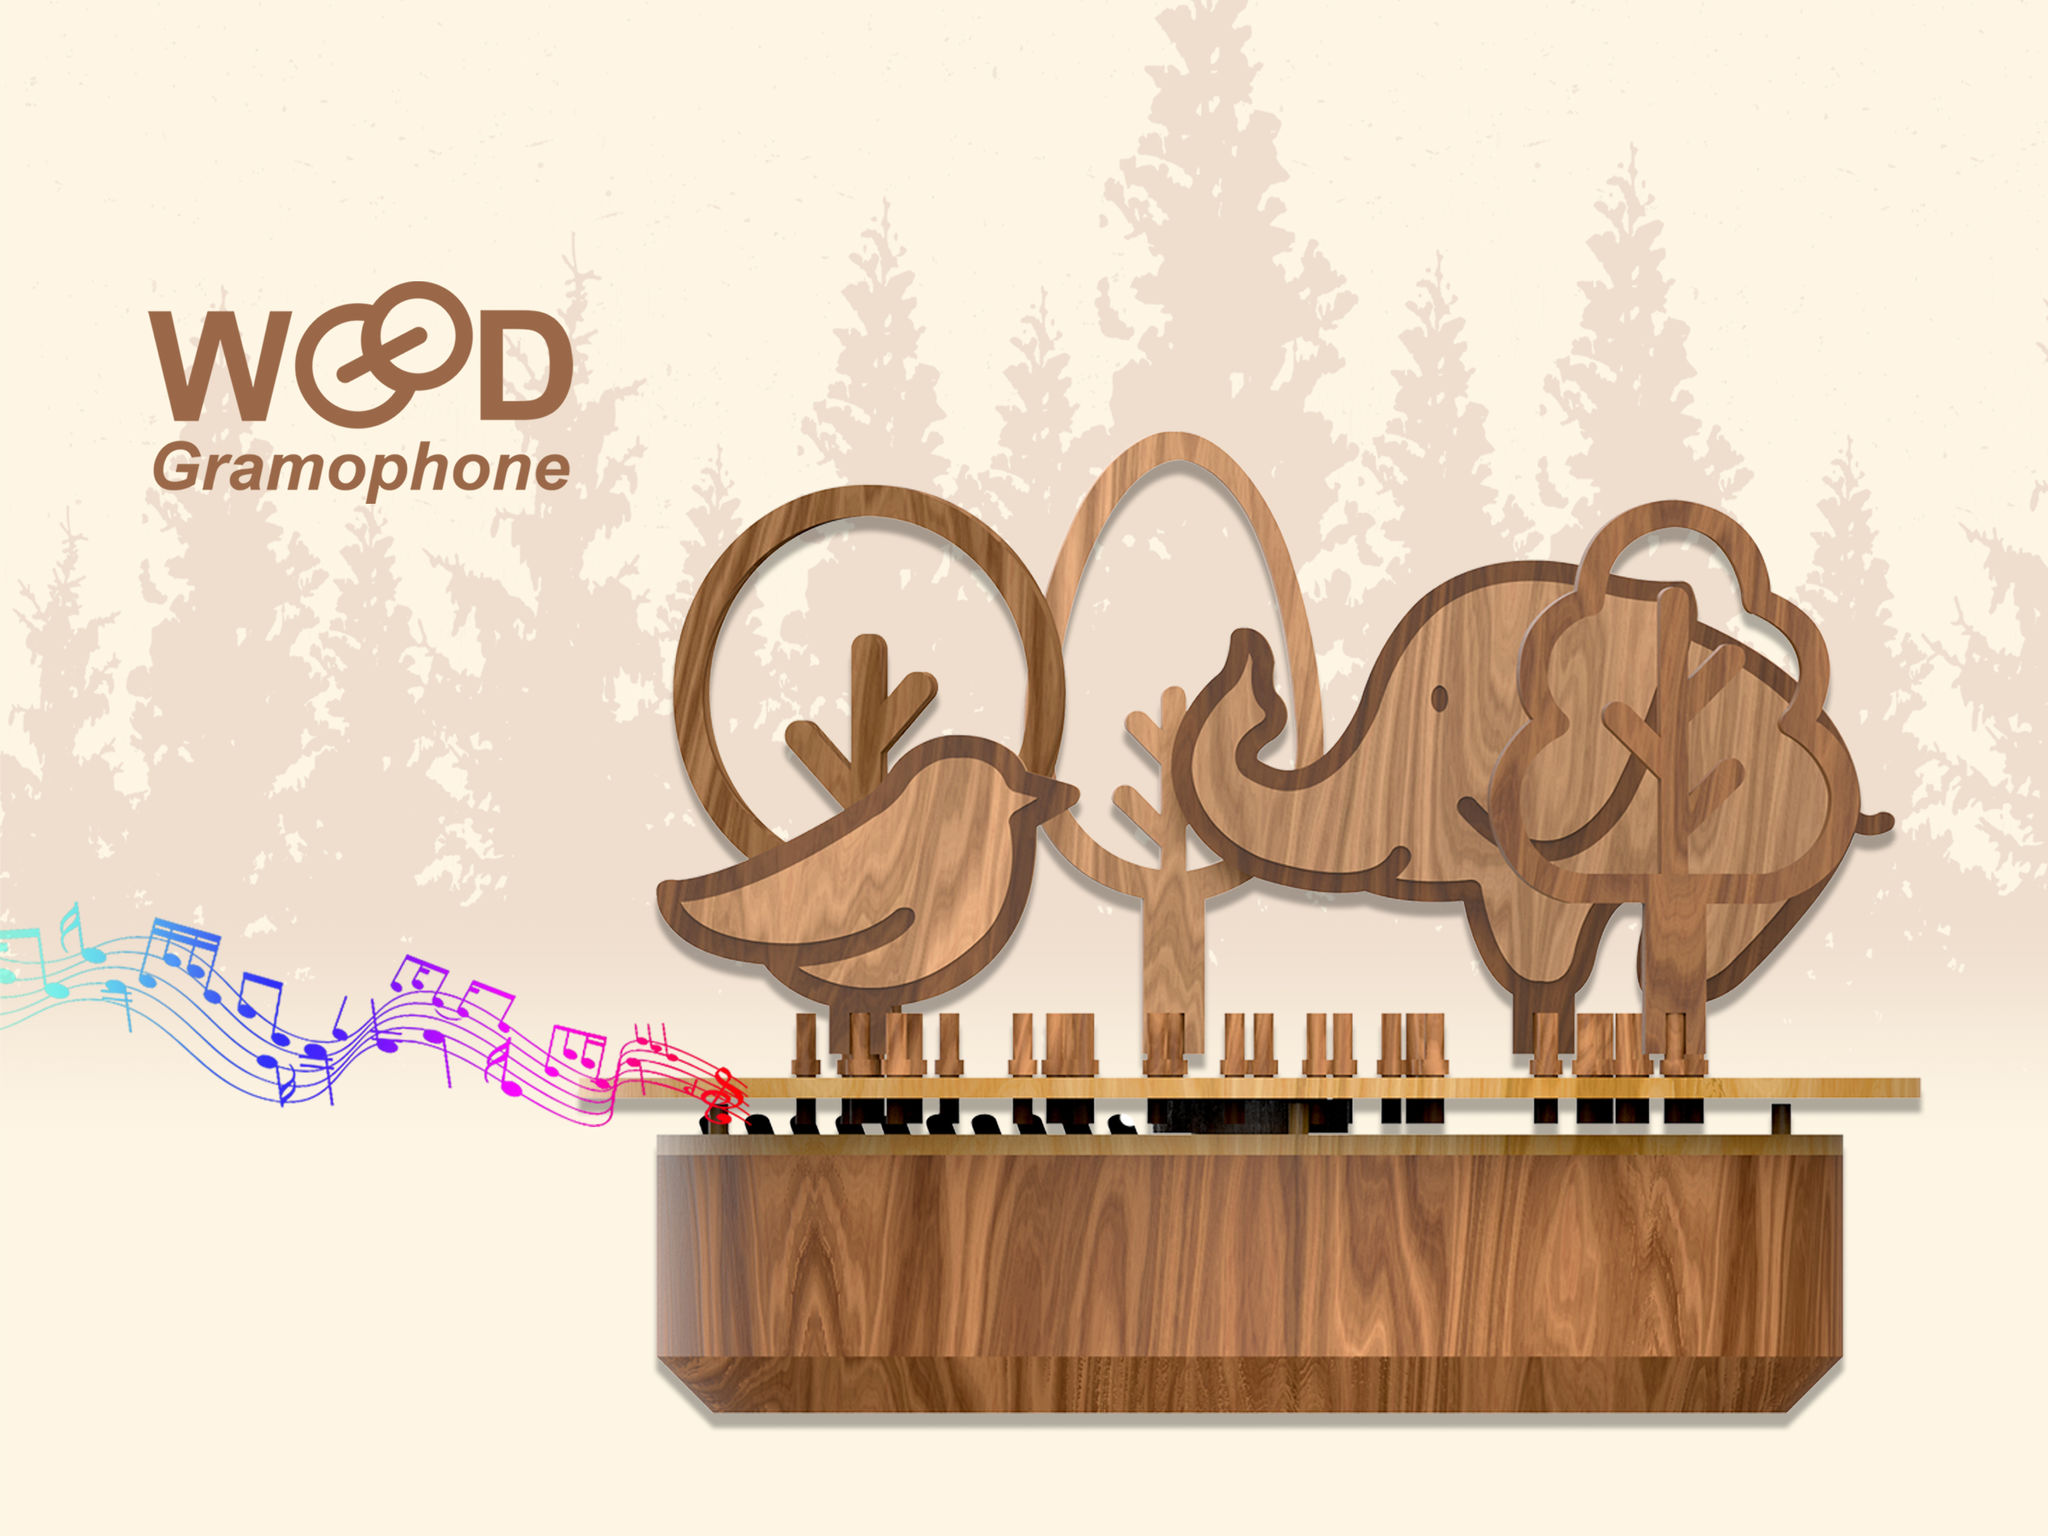 Wood gramophone